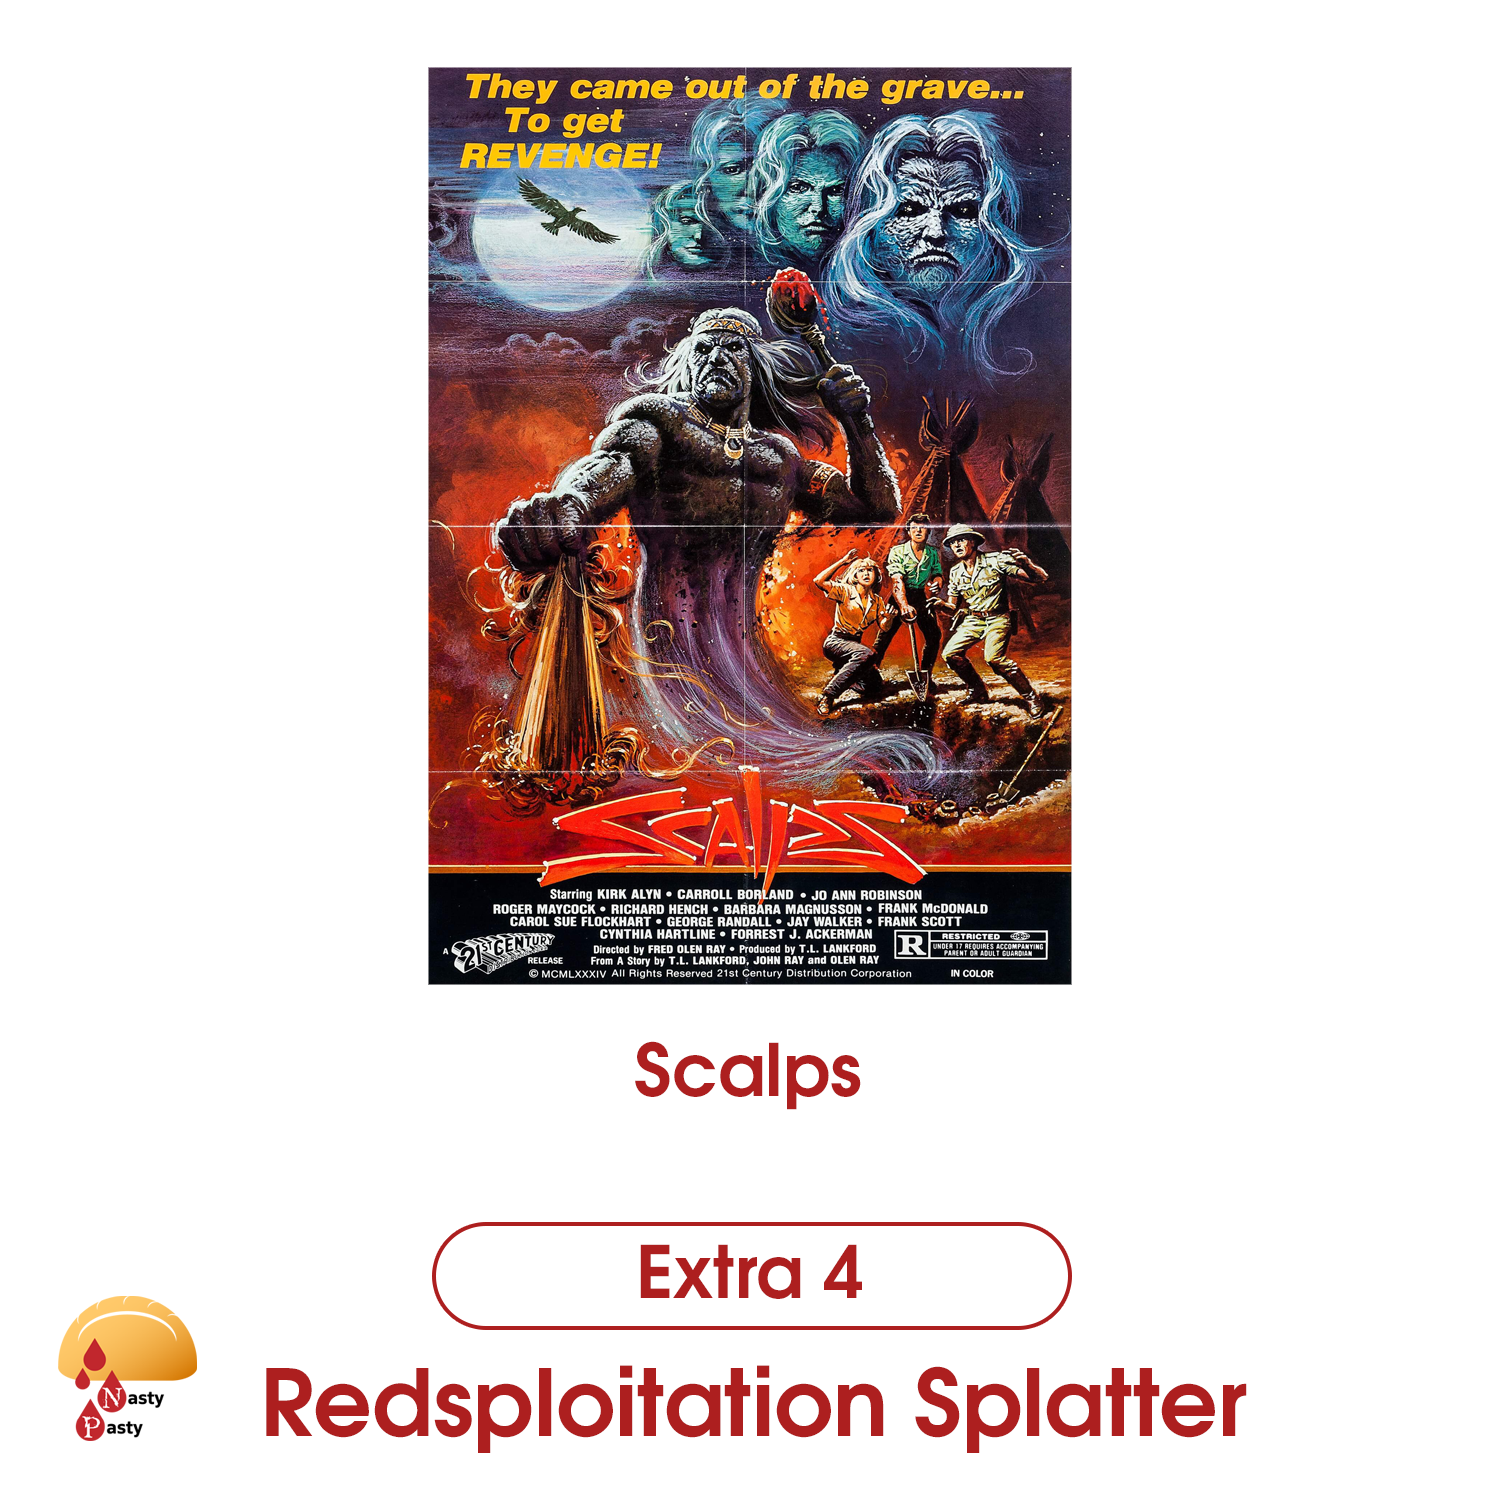 Extra 4: Redsploitation Splatter